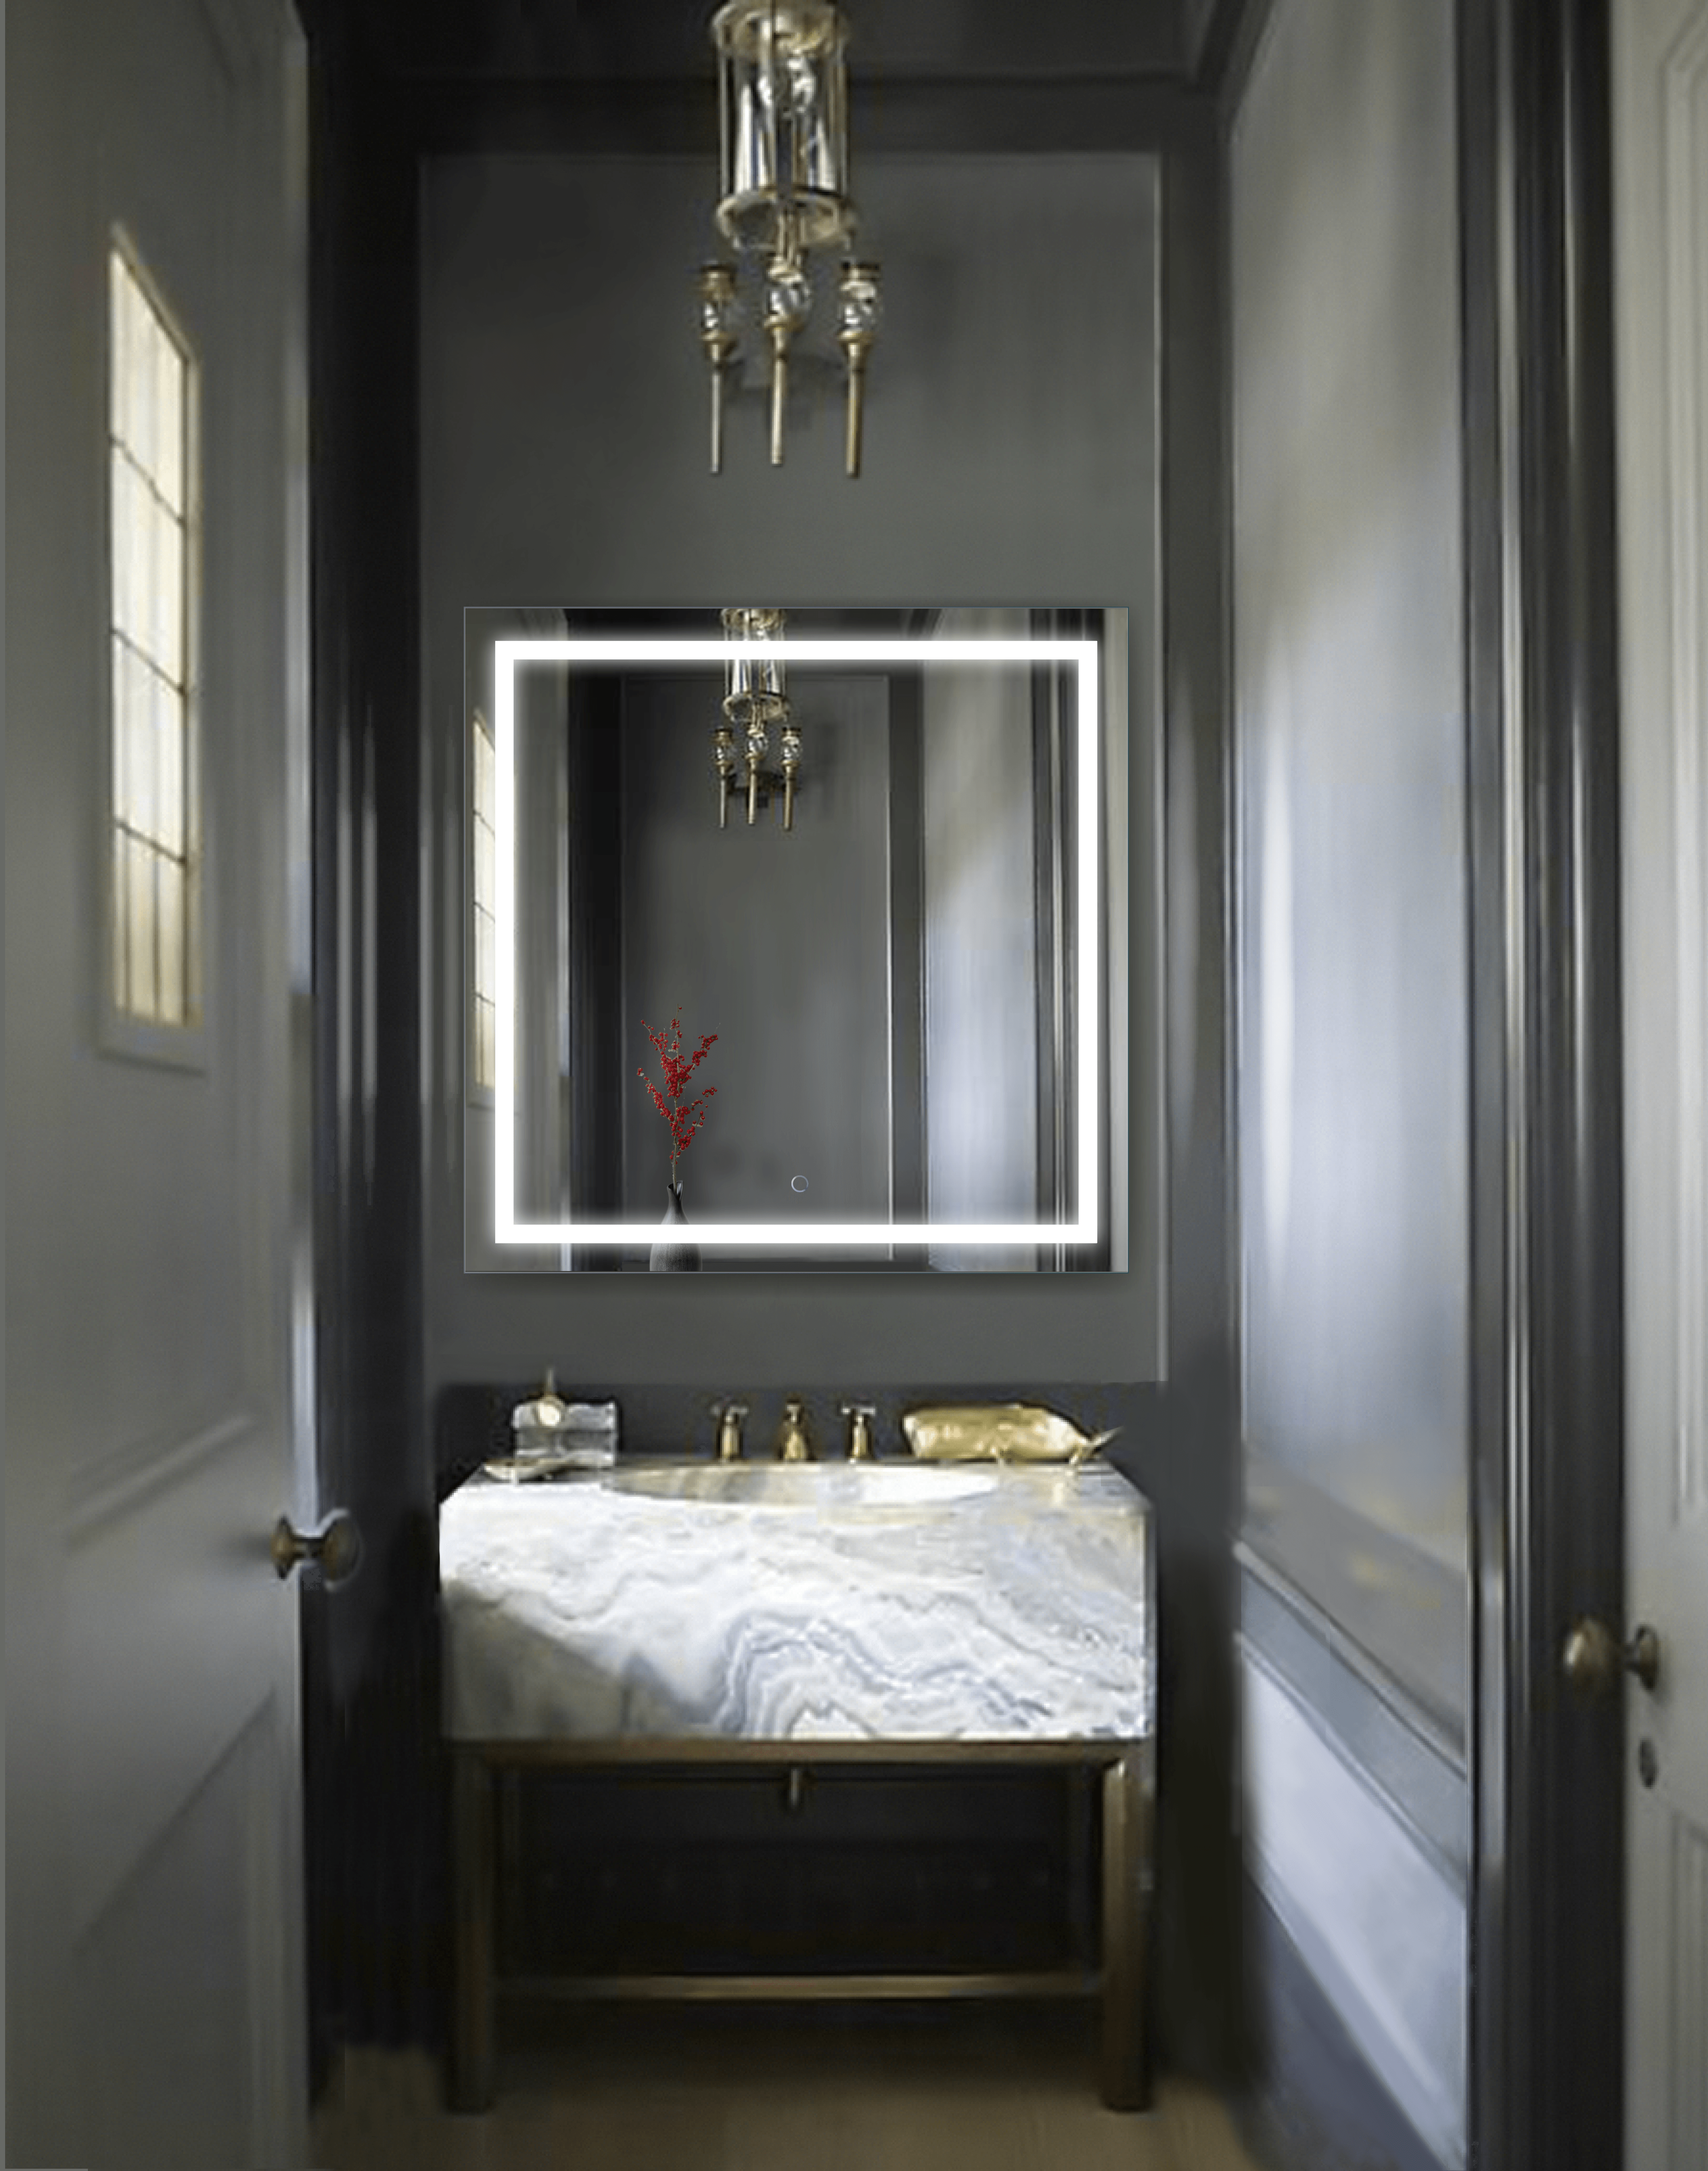 Krugg Icon 36″ X 36″ LED Bathroom Mirror w/ Dimmer & Defogger